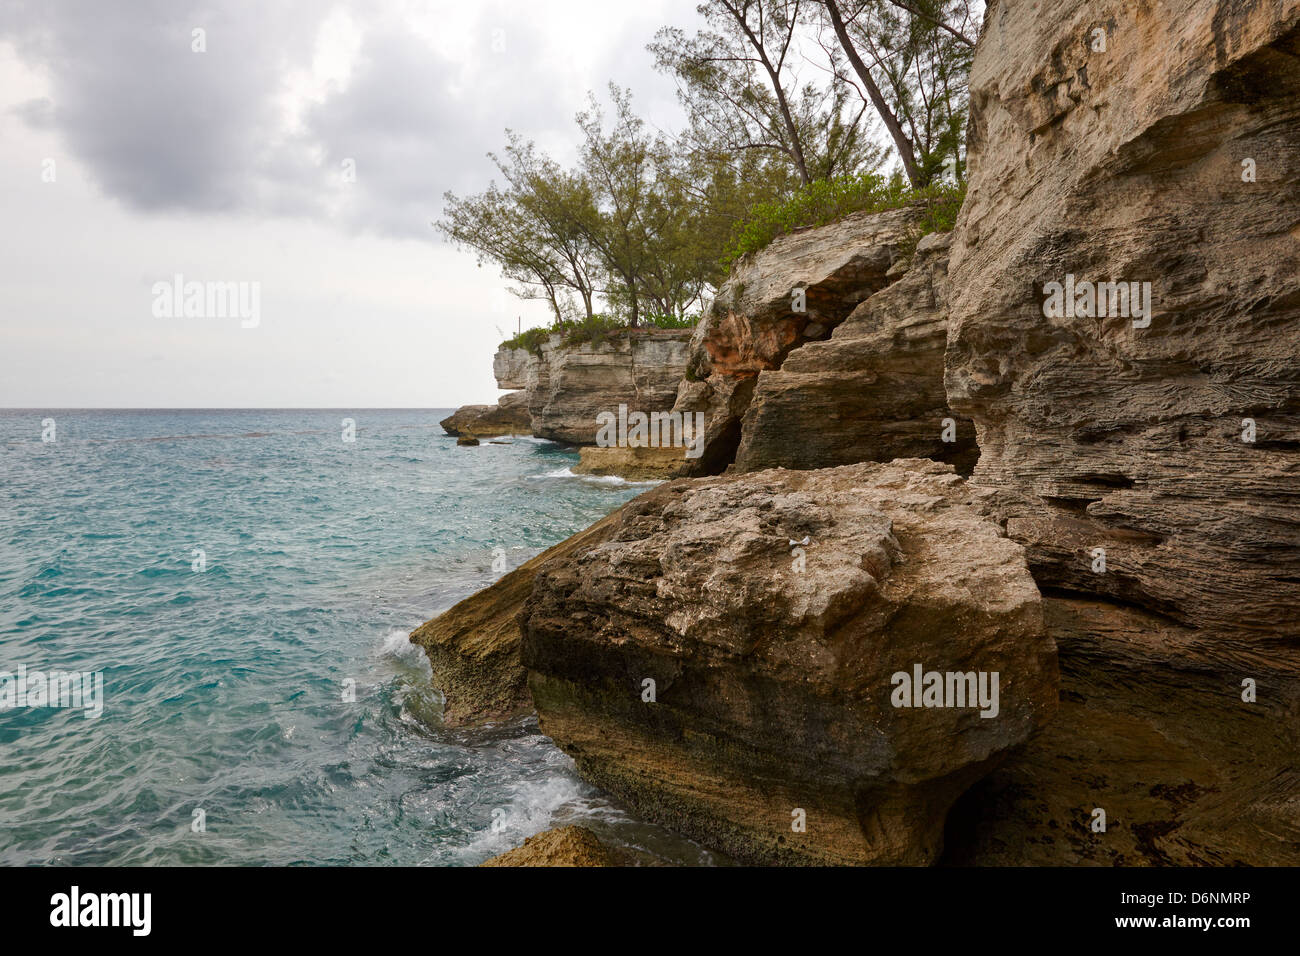 Clifton Point Cliffs, New Providence Island, Bahamas Stock Photo